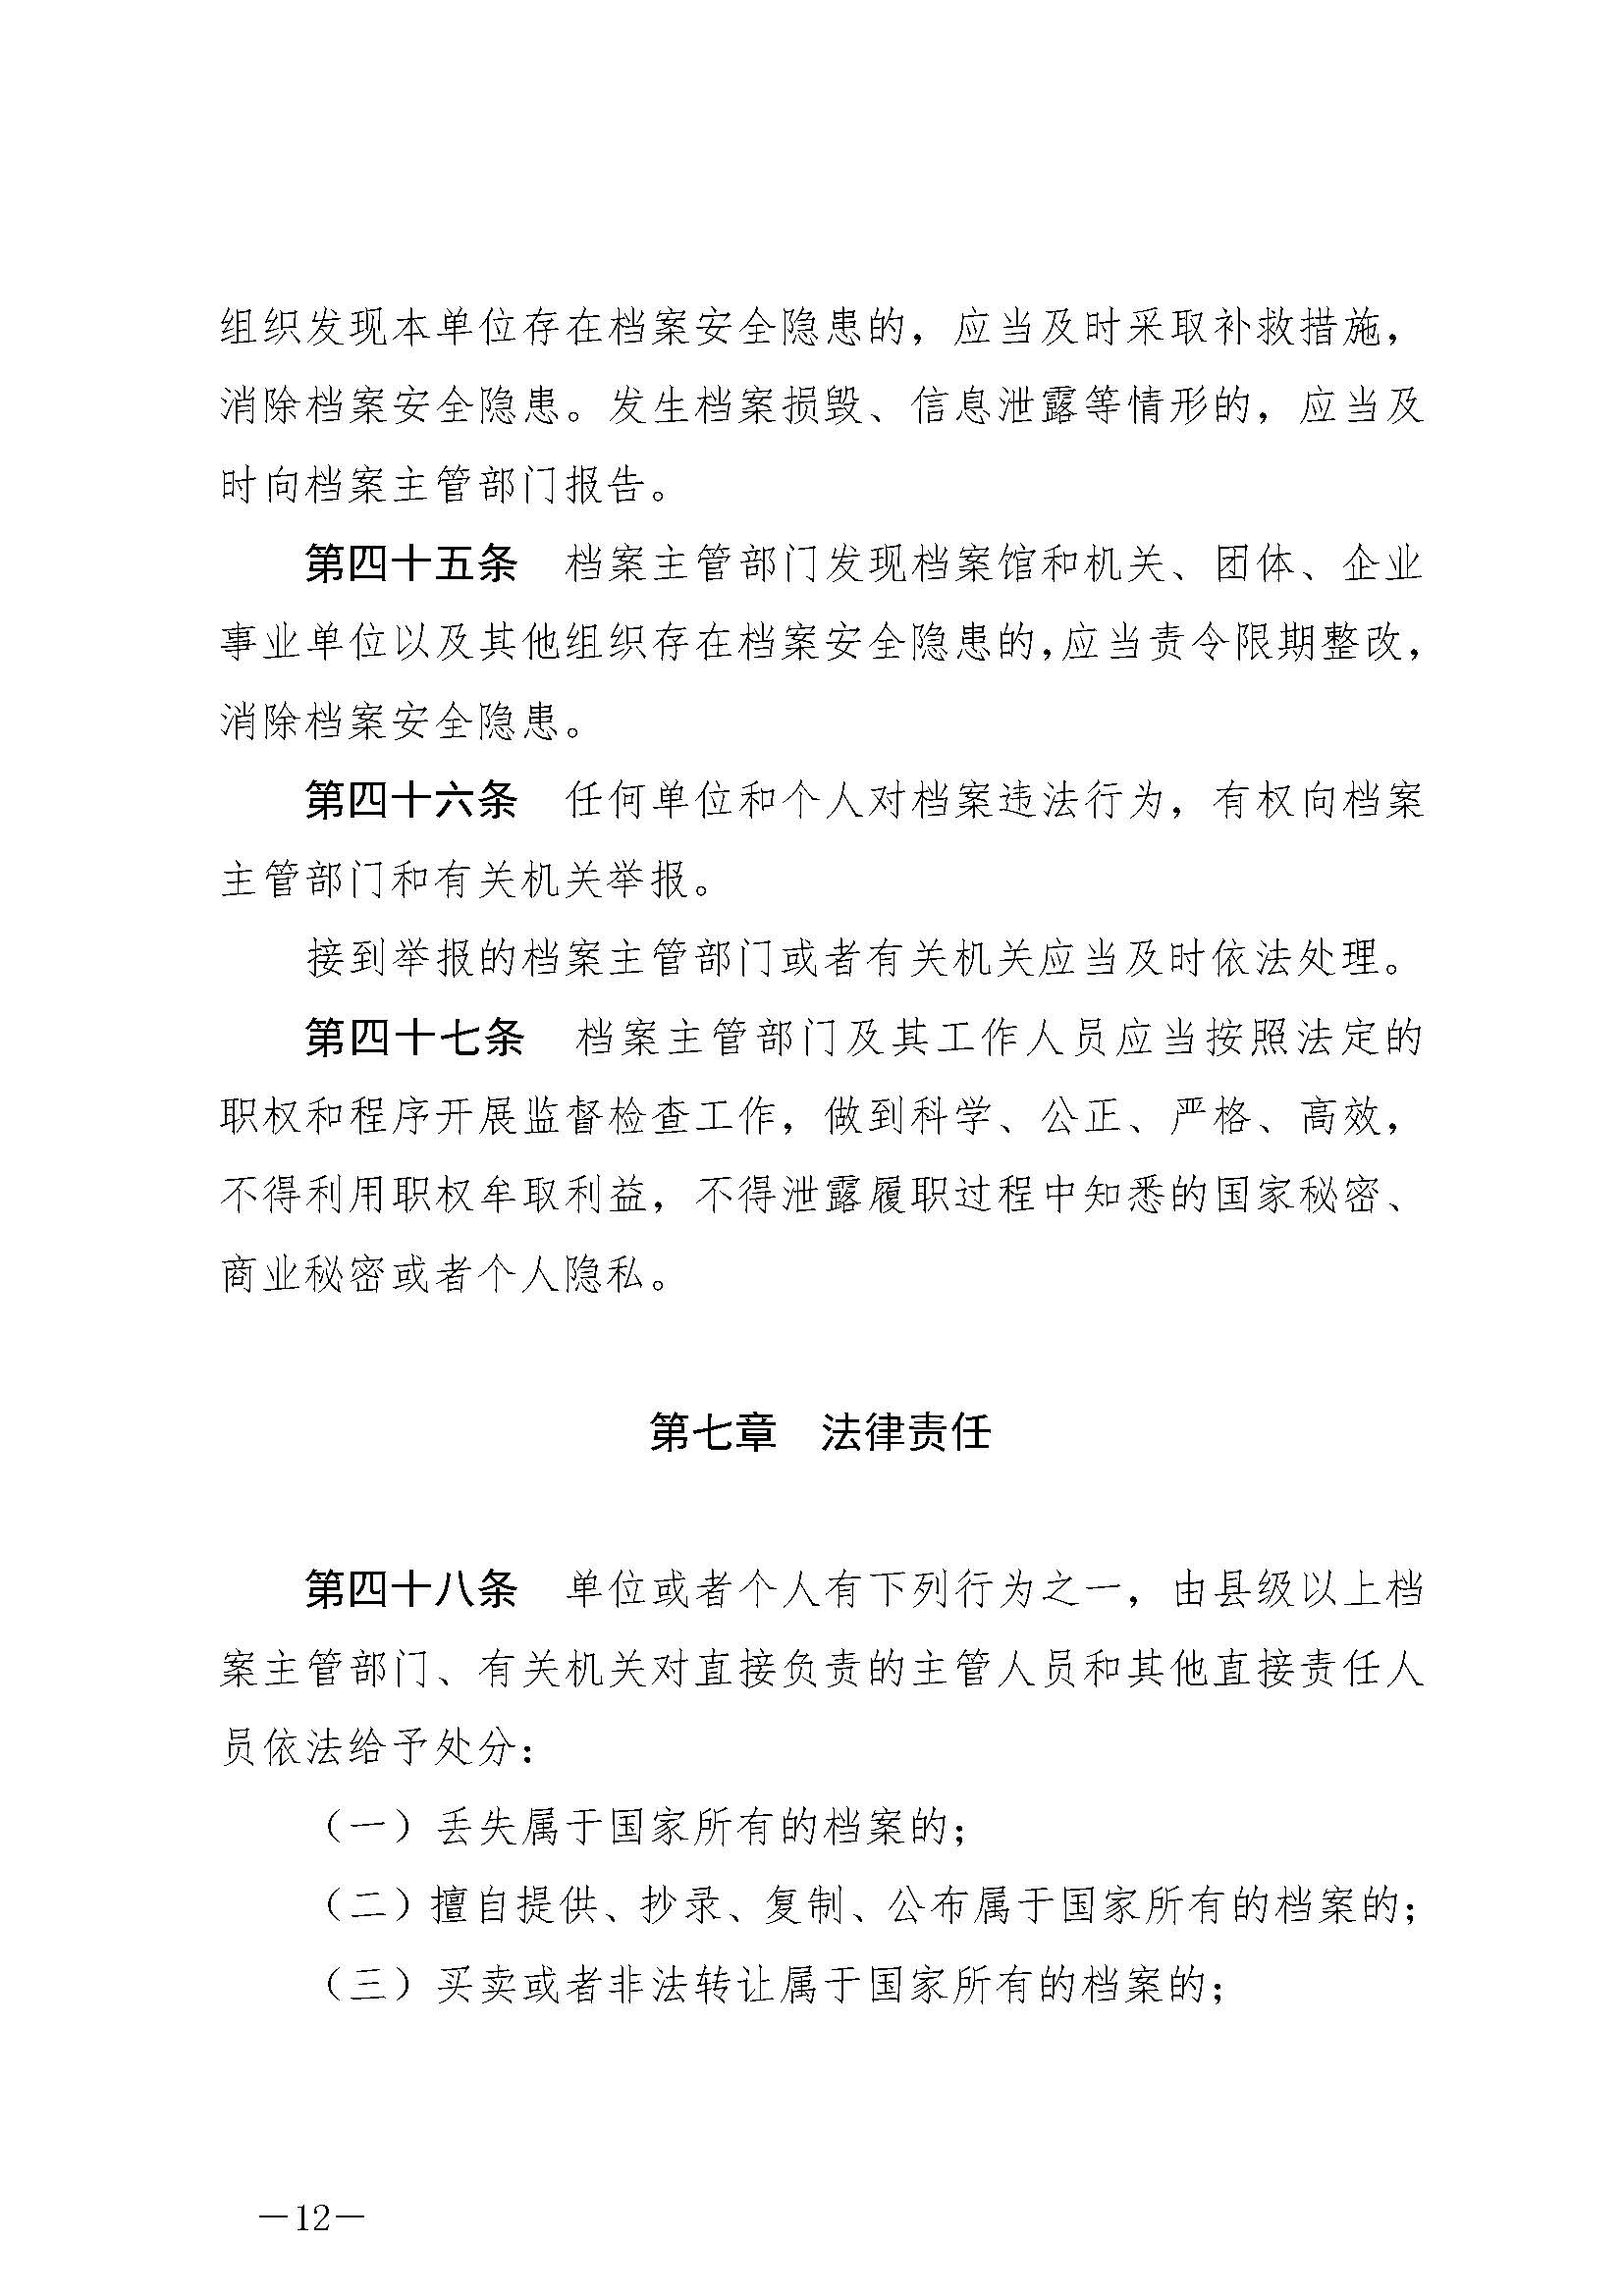 《中华人民共和国档案法》_页面_12.jpg